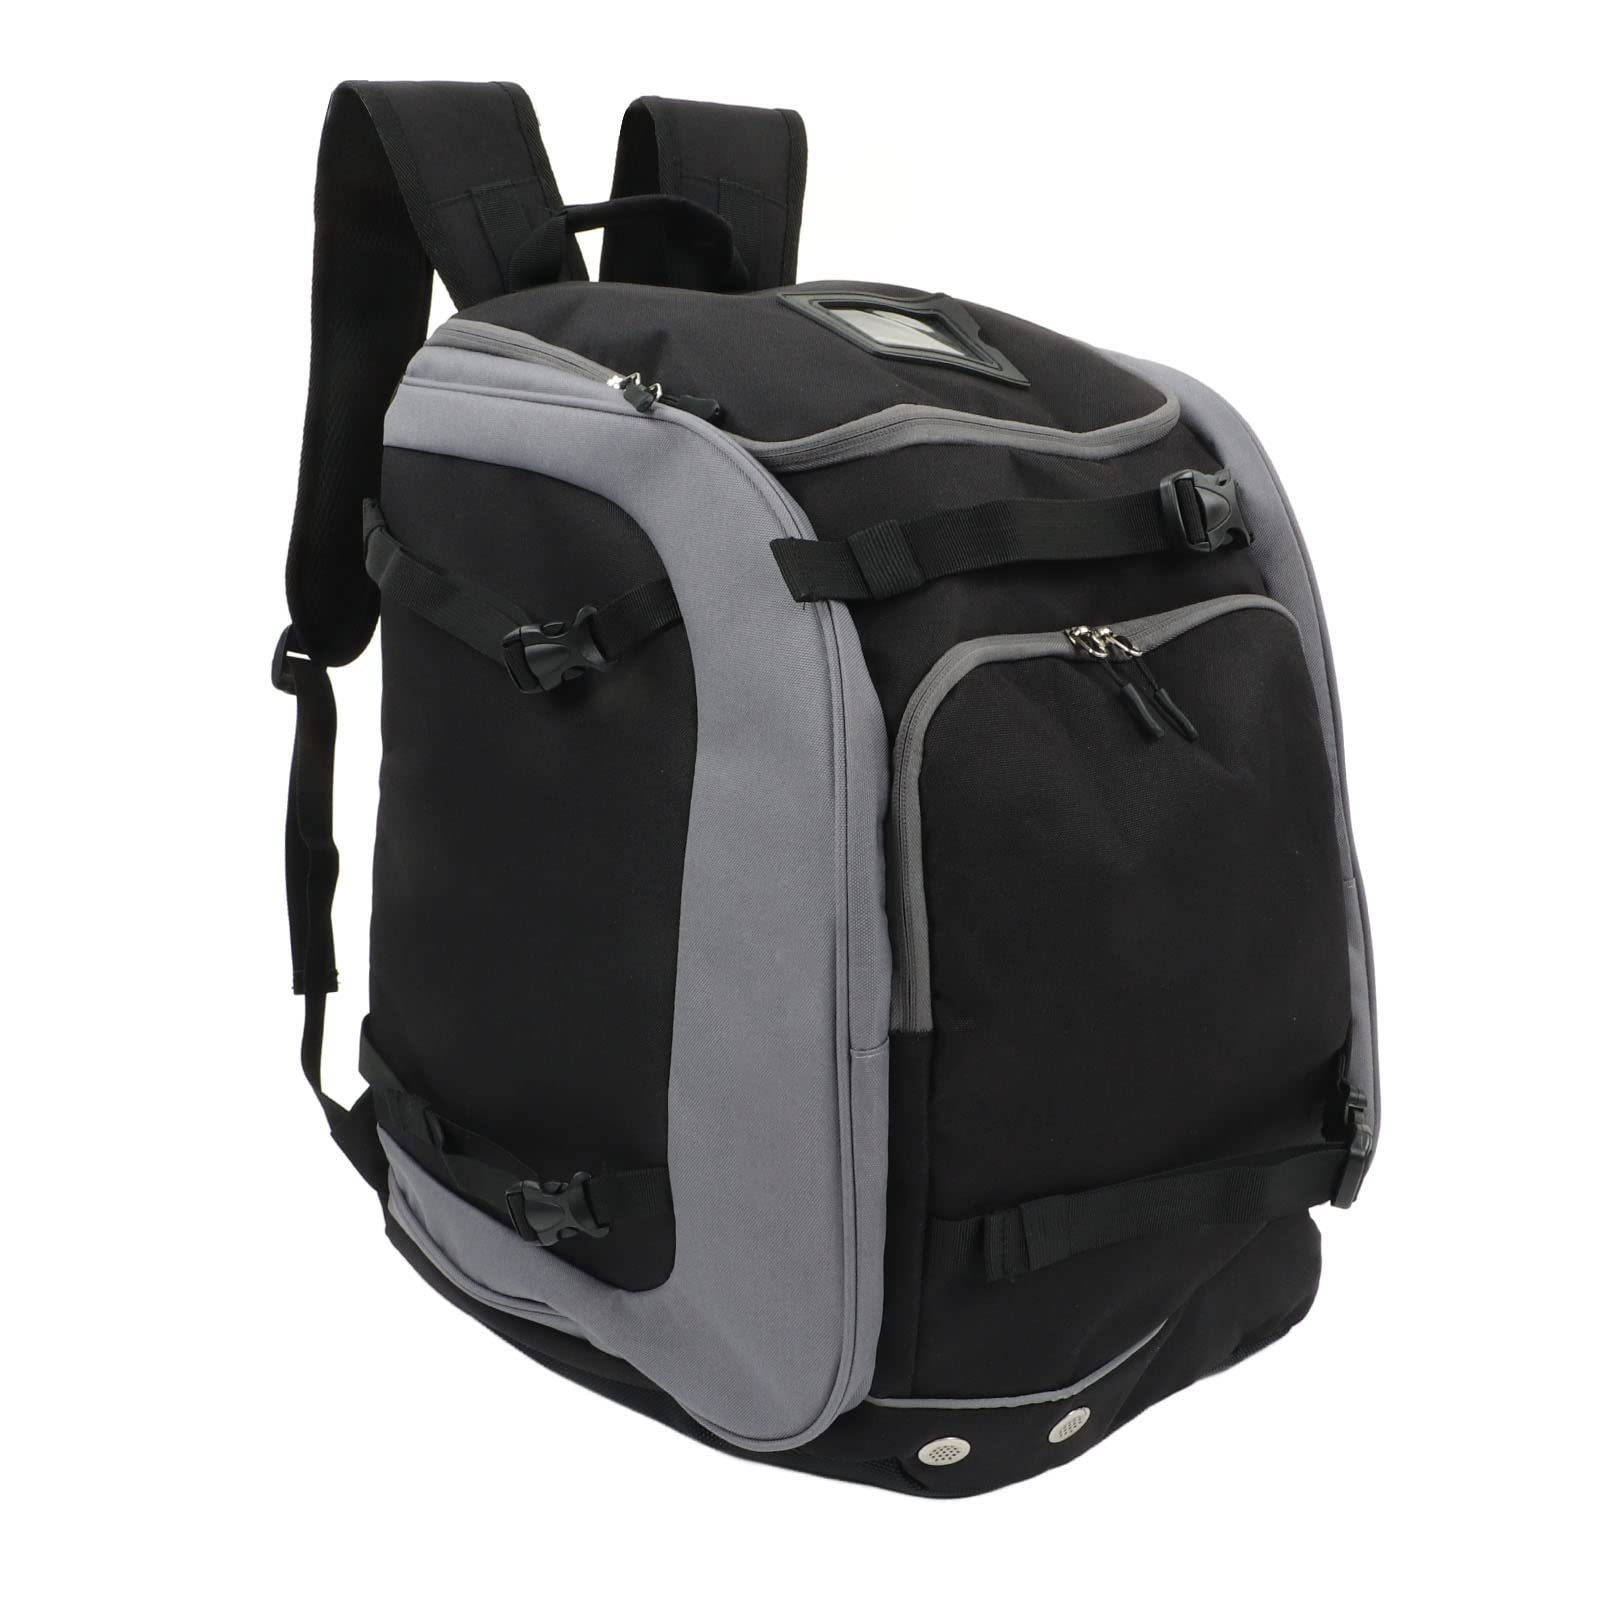 送料無料Jaxenor Ski Boot Bag - Large Capacity Oxford Fabric Backpack for Snowboarding Travel Camping and Fishing並行